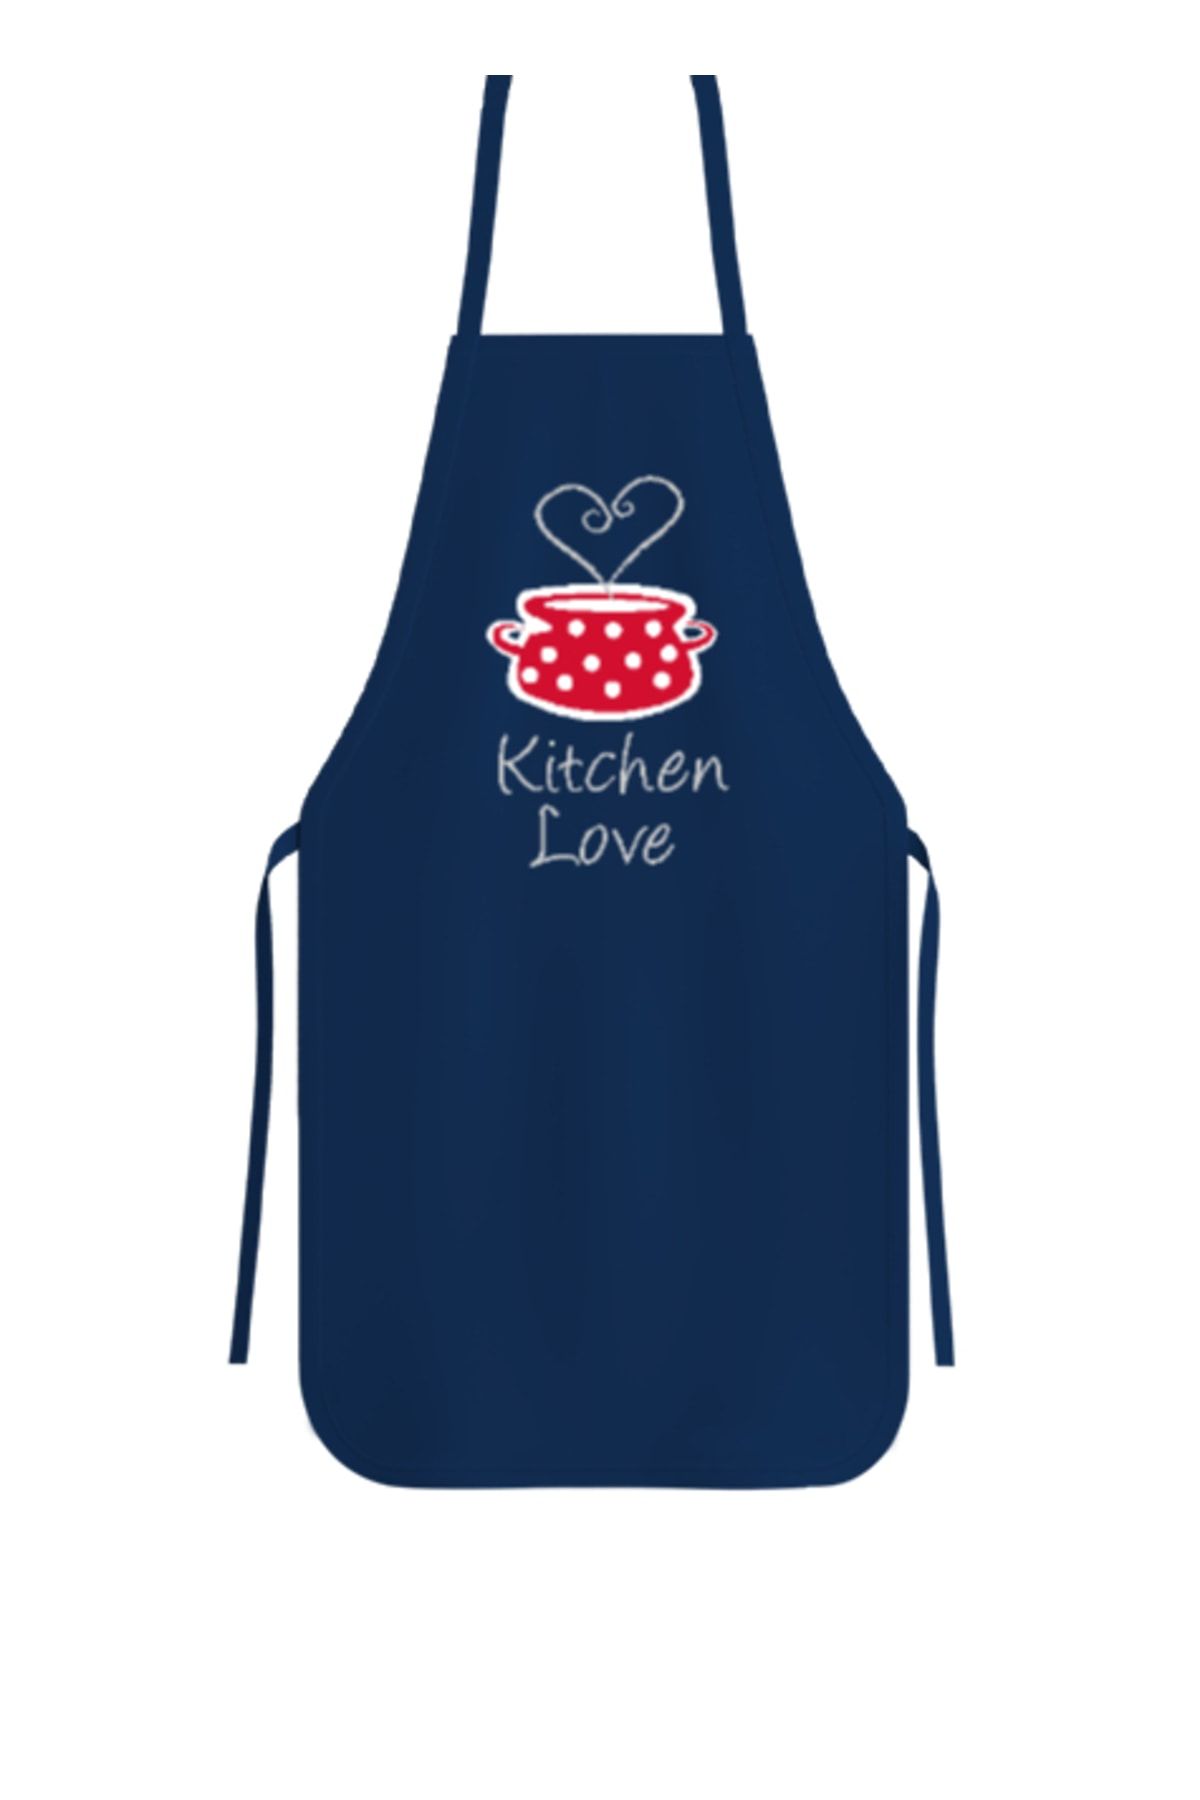 Tisho Kitchen Love - Mutfak Aşkı Lacivert Mutfak Önlüğü